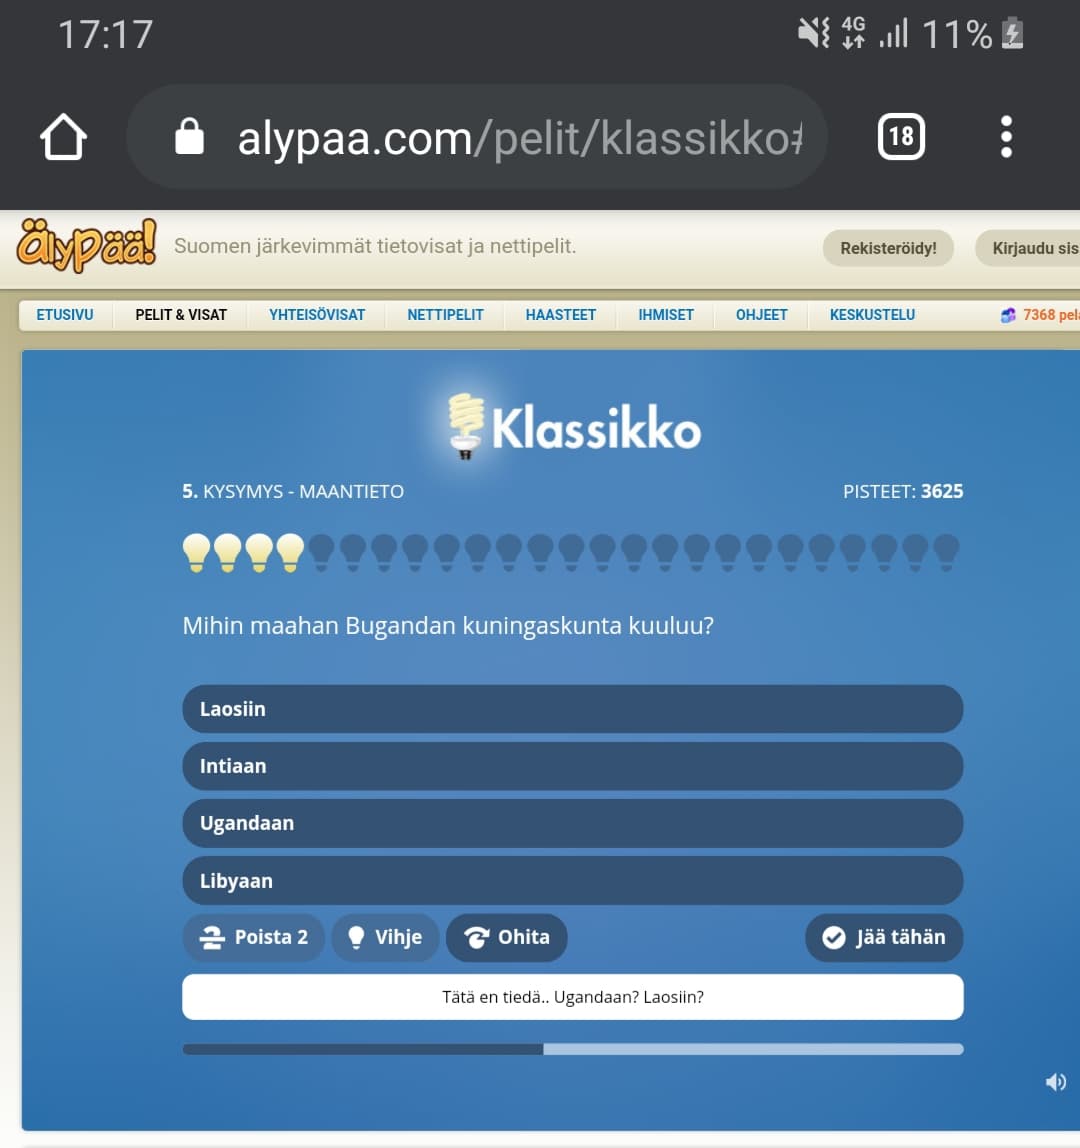 Älypää peli on yksi Suomen suosituimmista peleistä